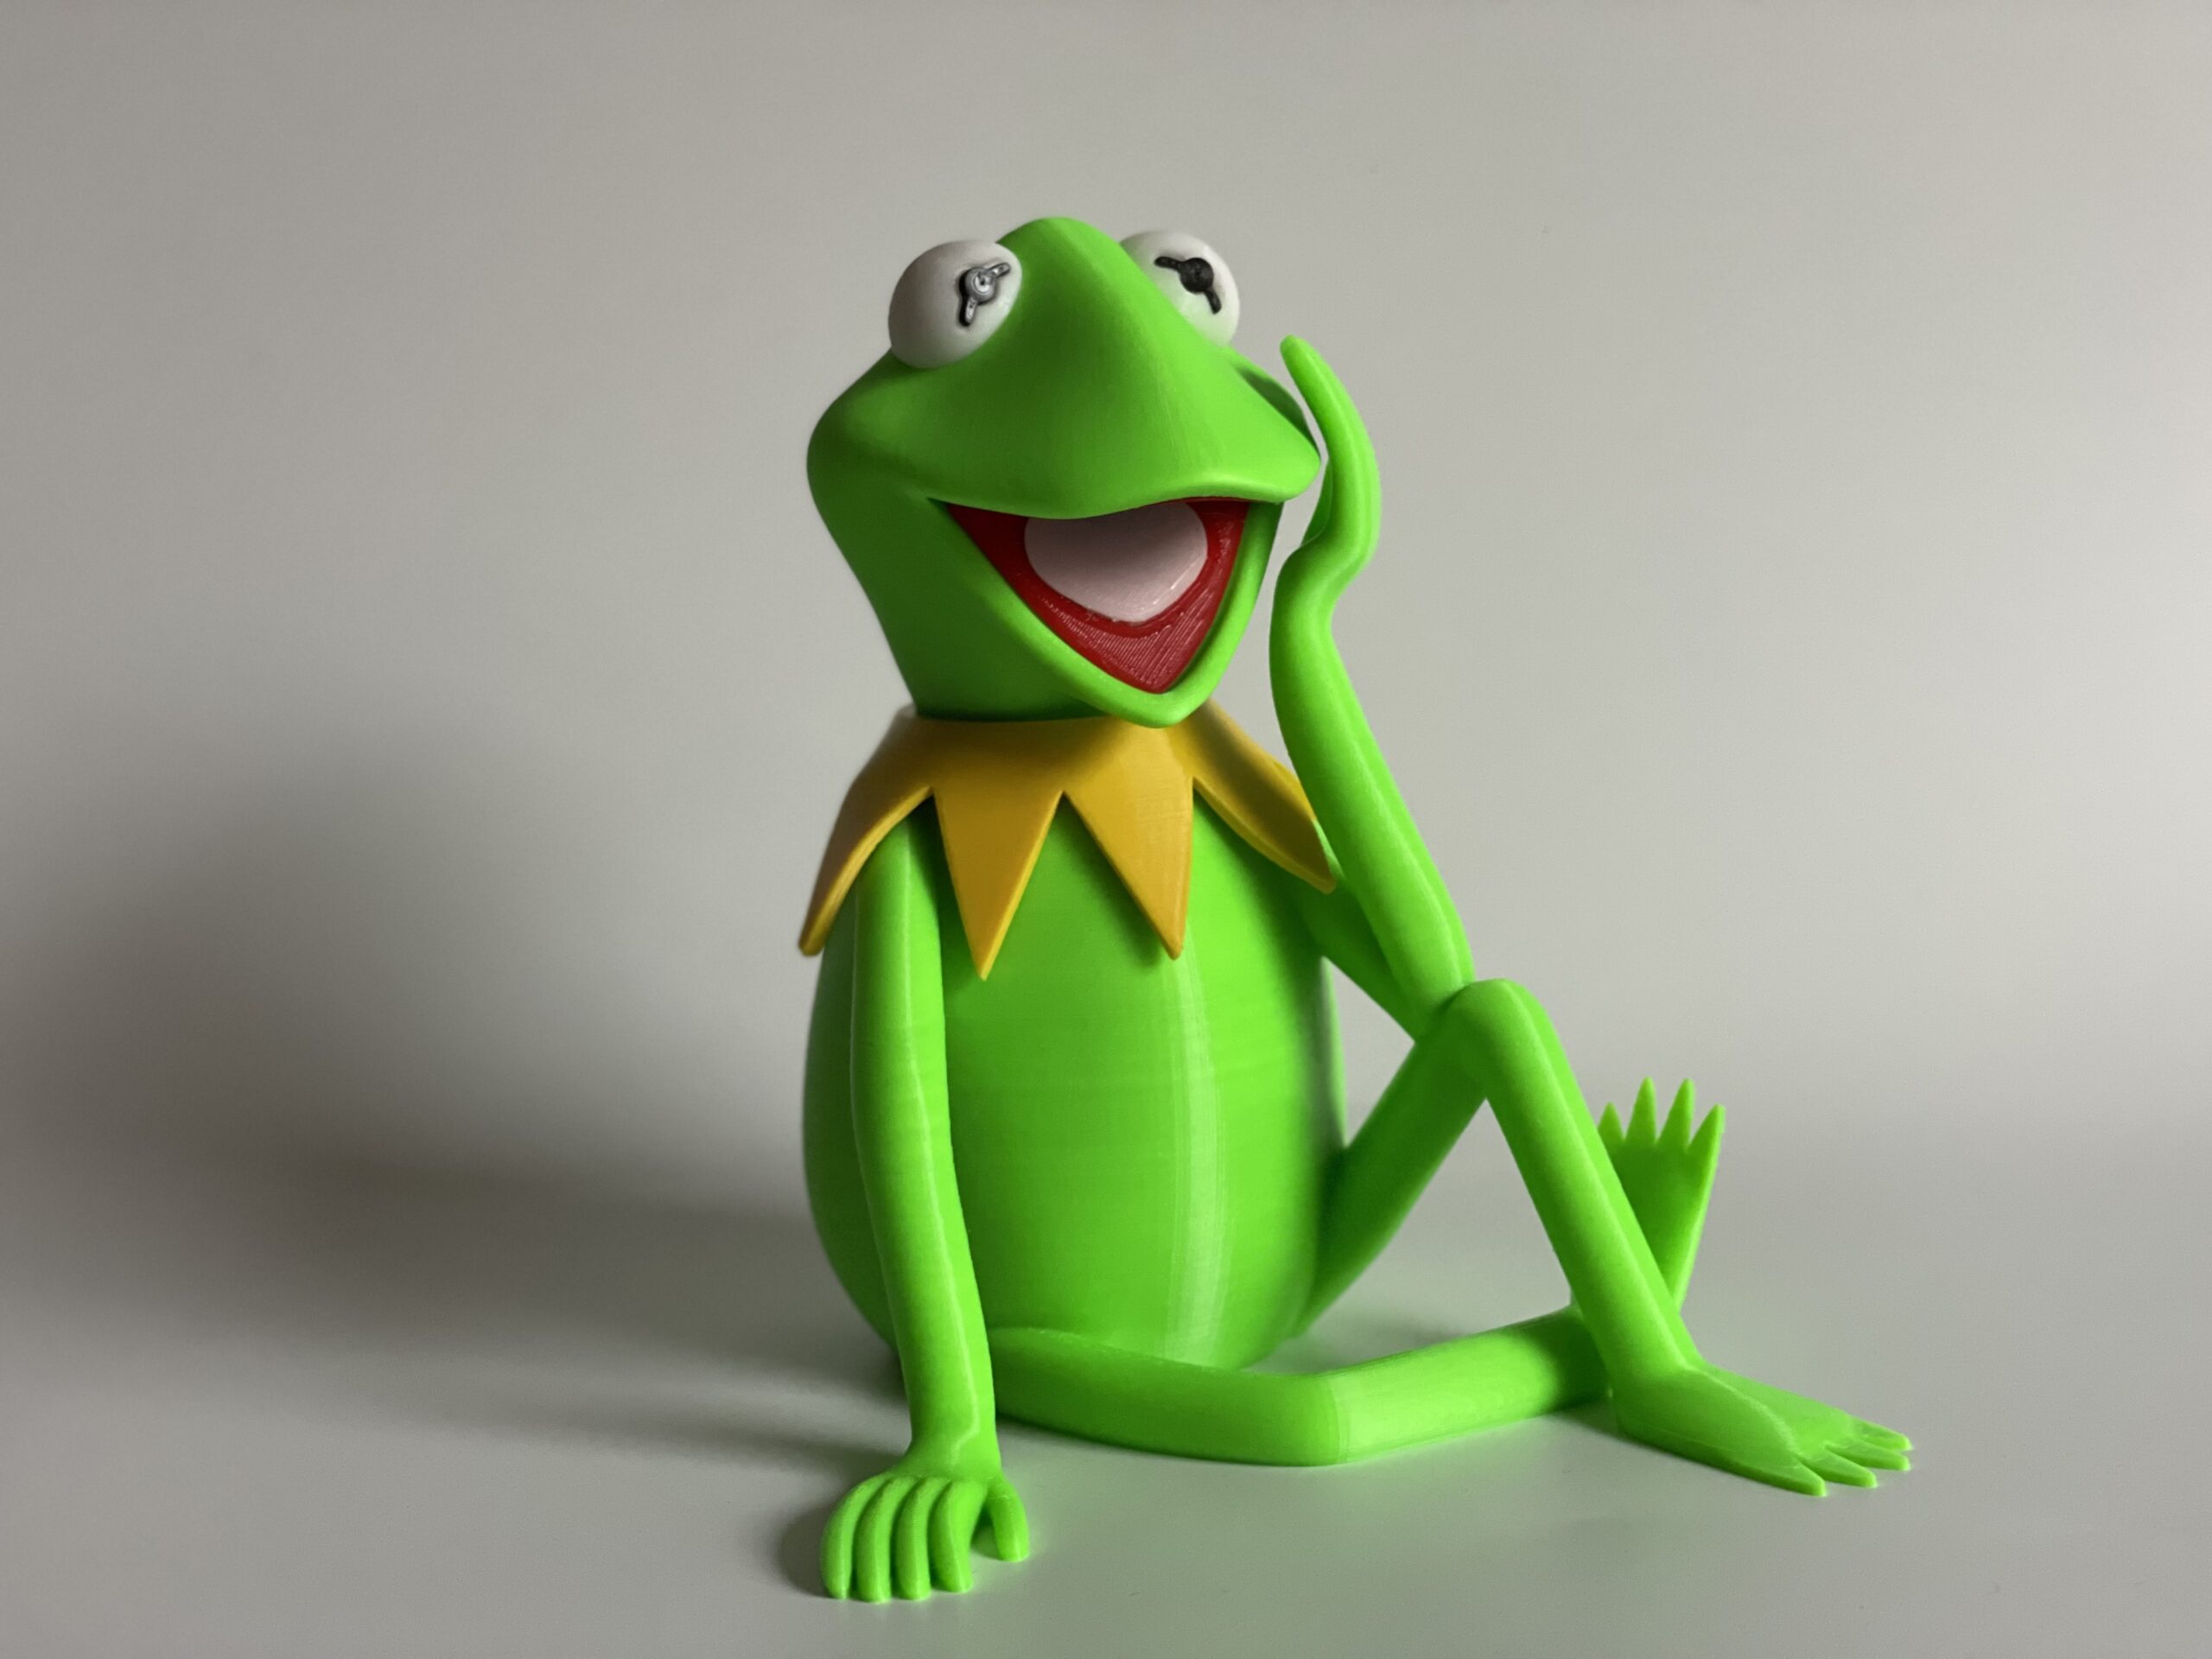 Thermocollant Kermit la grenouille des Muppets Show - 3B COM